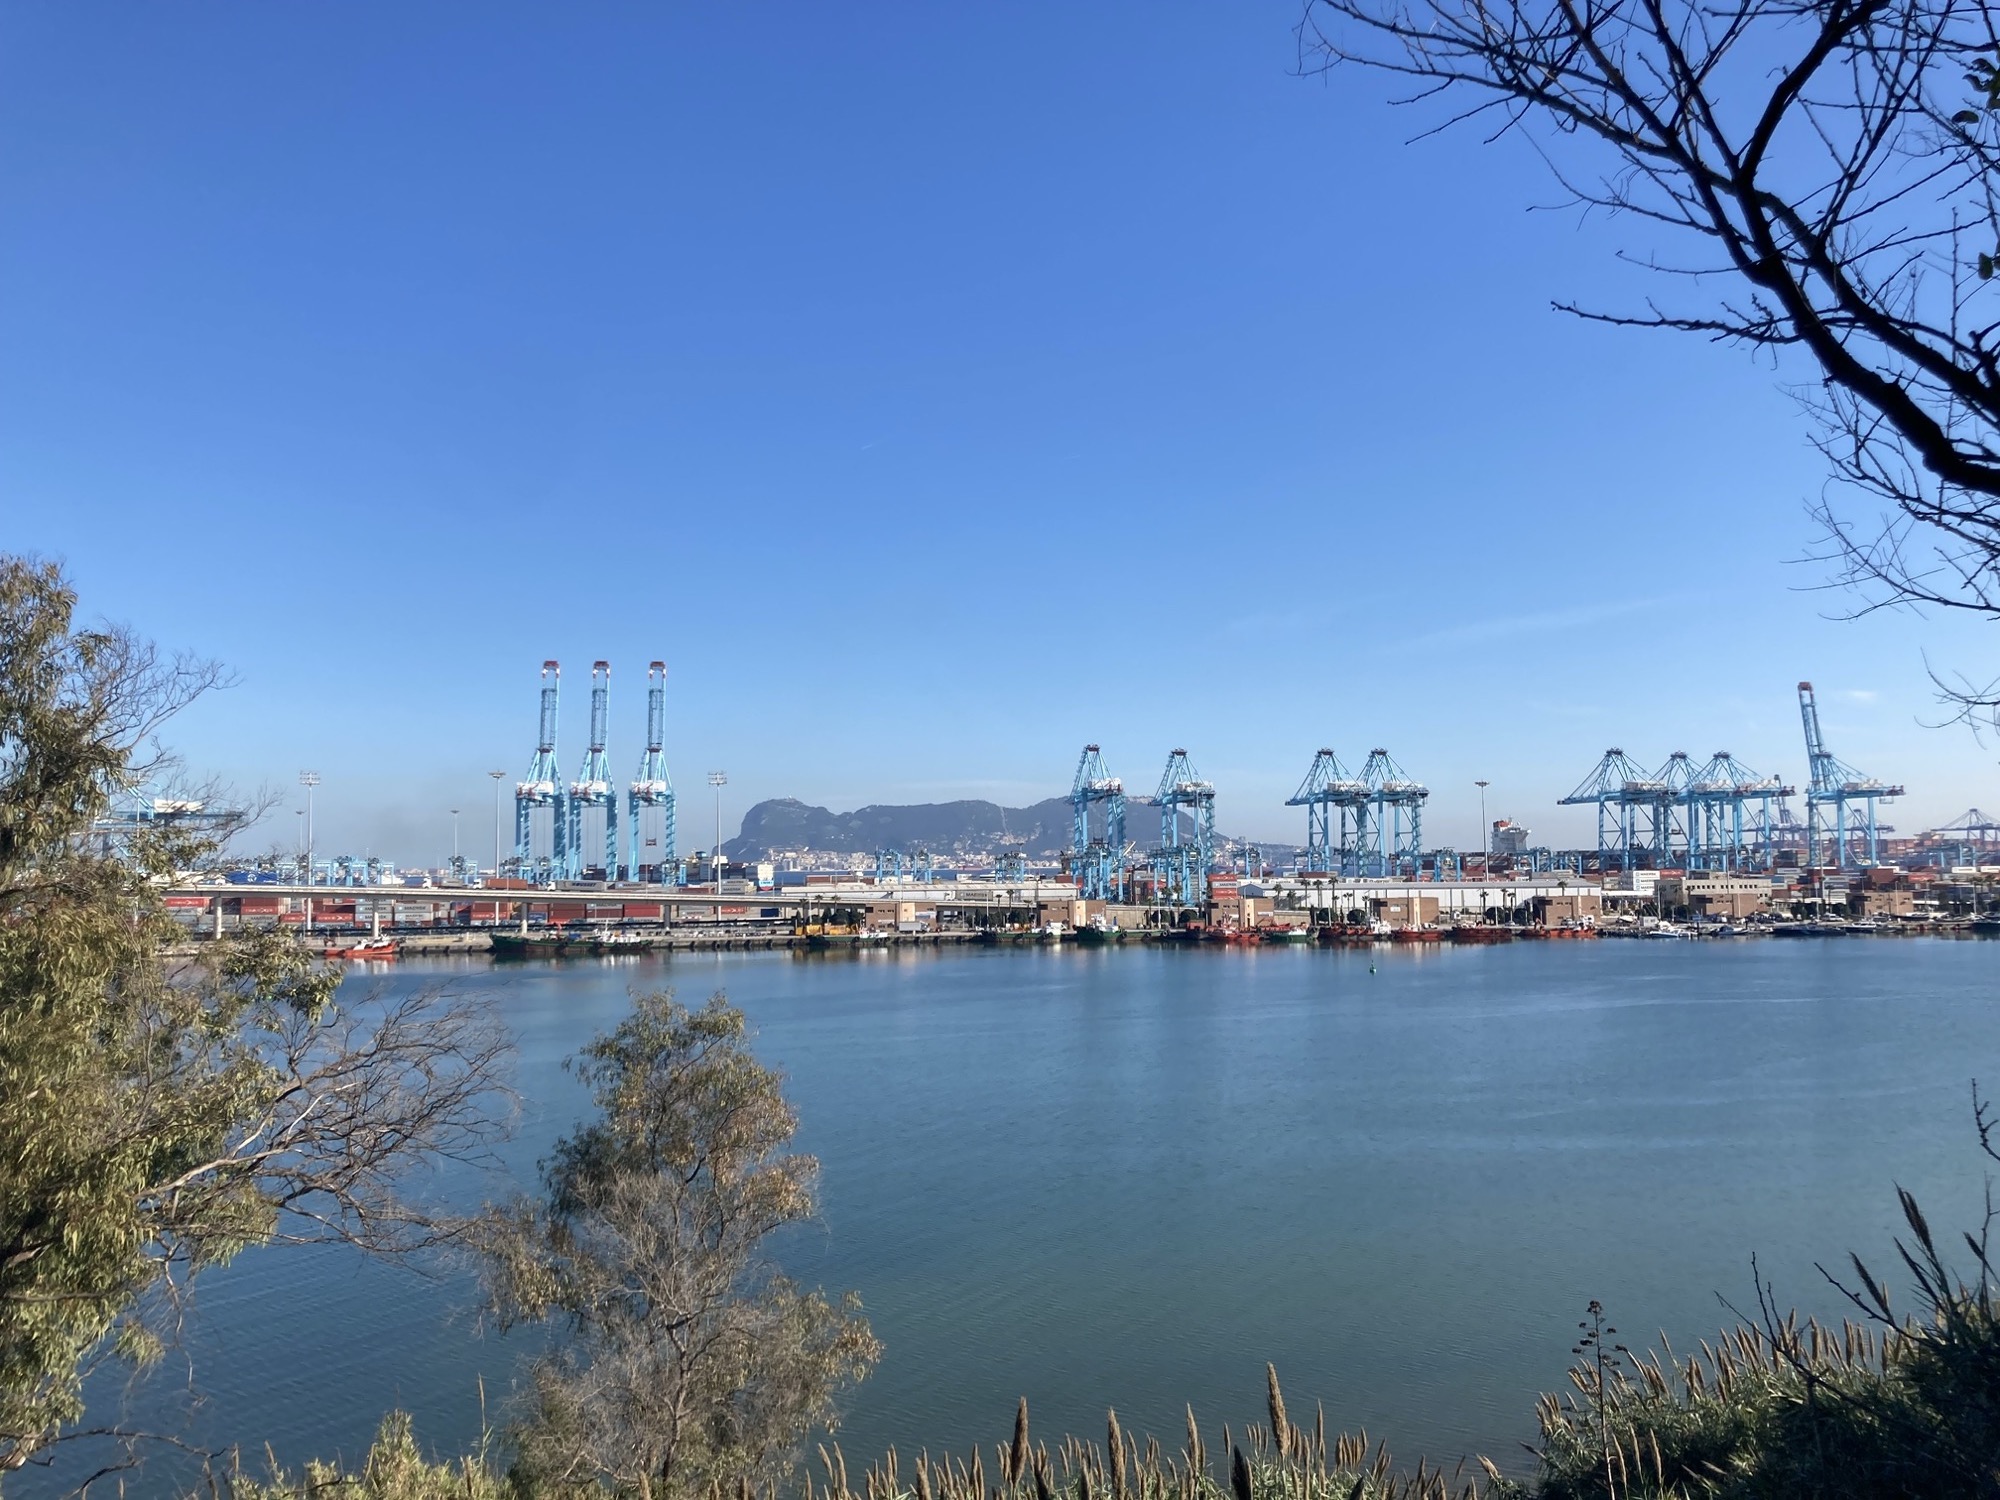 Blick auf den Containerhafen von Algeciras, im Vordergrund Gebüsch, dann eine Wasserfläche, dahinter das Terminal mit vielen blauen Containerkränen, ganz hinten zwischen den Kränen ist der Felsen von Gibraltar zu sehen